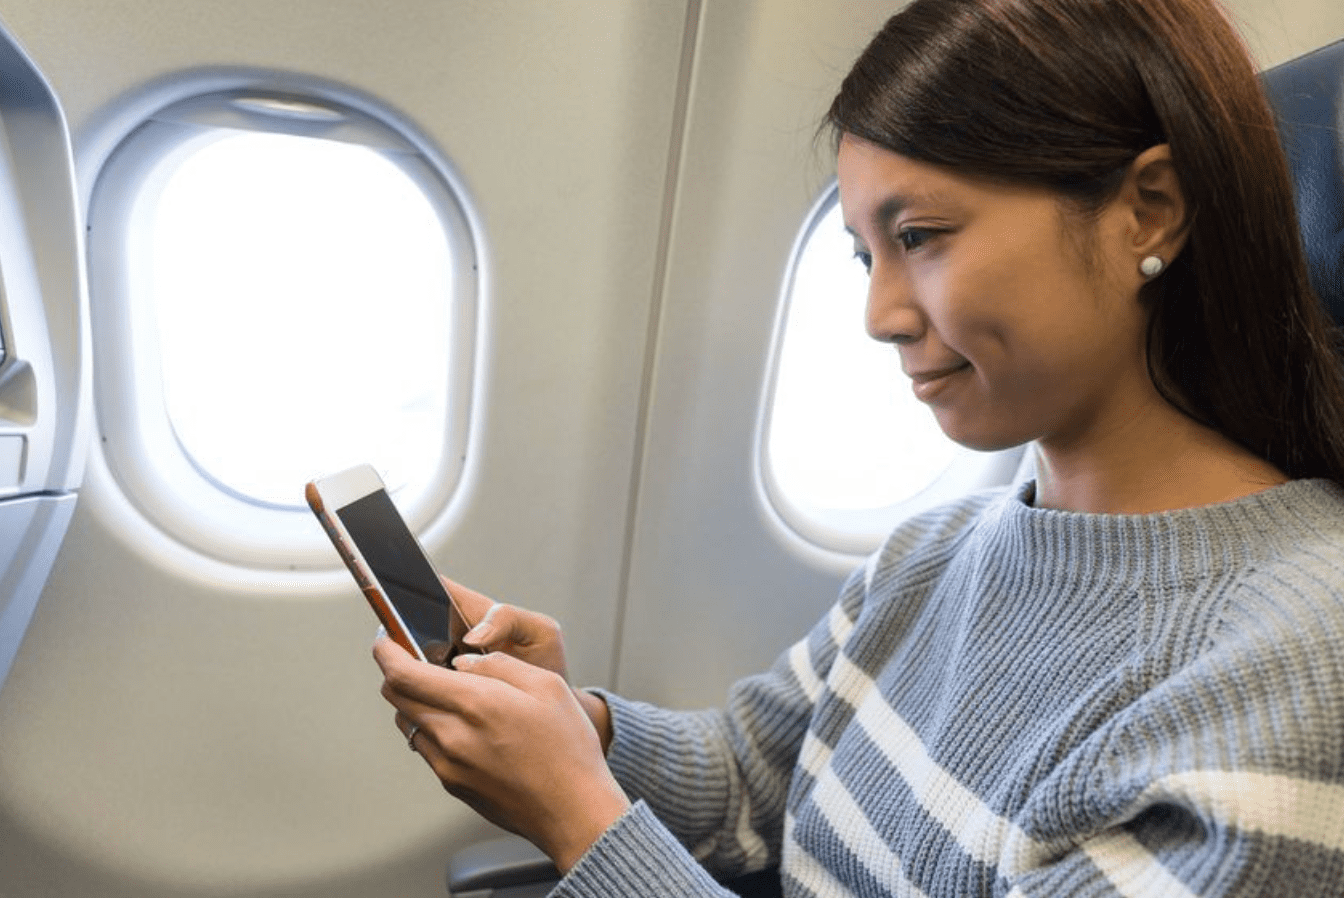 Ít hãng hàng không cung cấp Wi-Fi trên cabin, mặc dù nó cung cấp nhiều tiện nghi hơn cho hành khách trong thời gian bay. Ảnh: AP